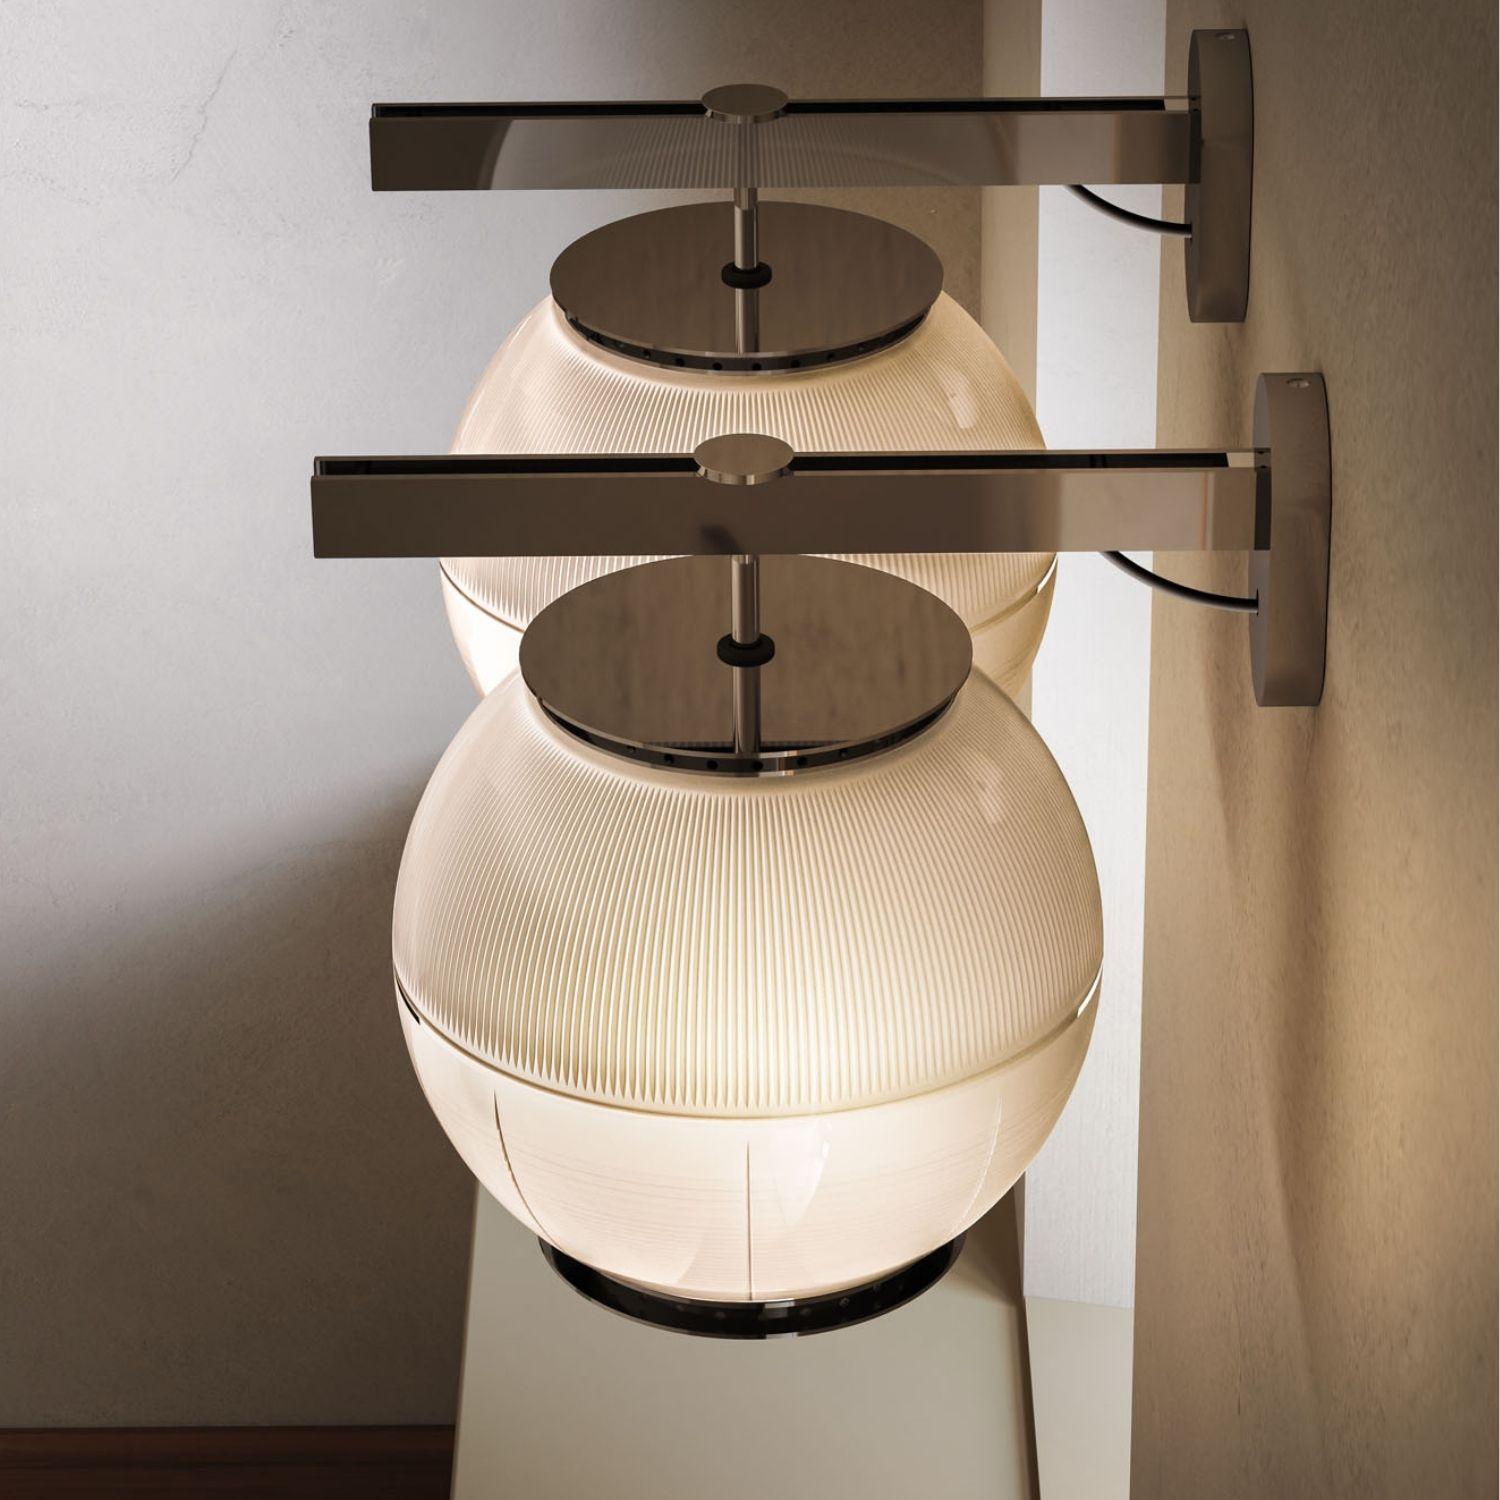 Contemporary Ignazio Gardella 'Doppio Vetro' Wall Lamp in Brass and Glass for Tato Italia For Sale